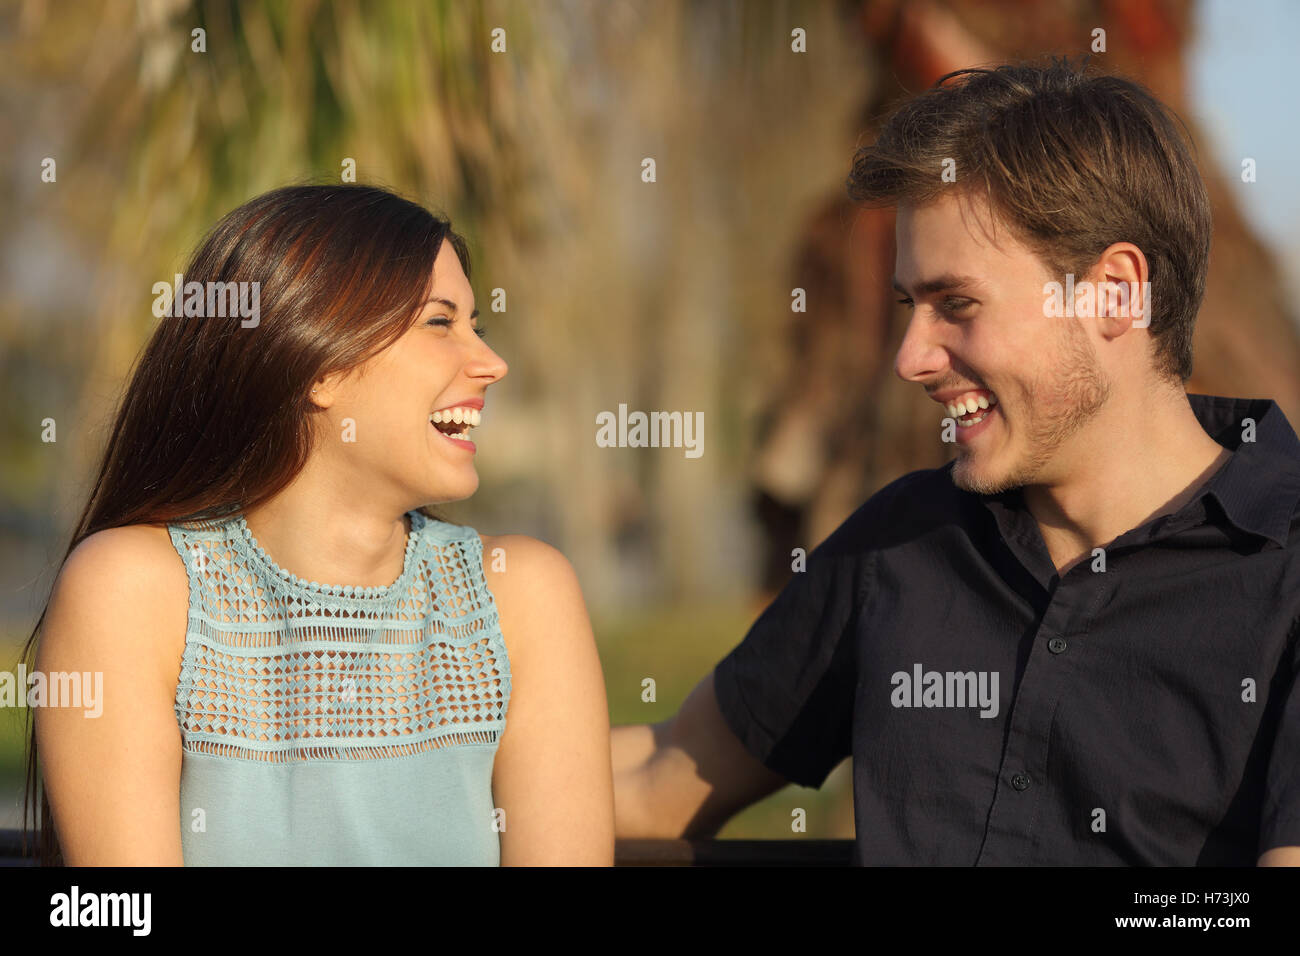 Freunde lachen und ein Gespräch in einem park Stockfoto